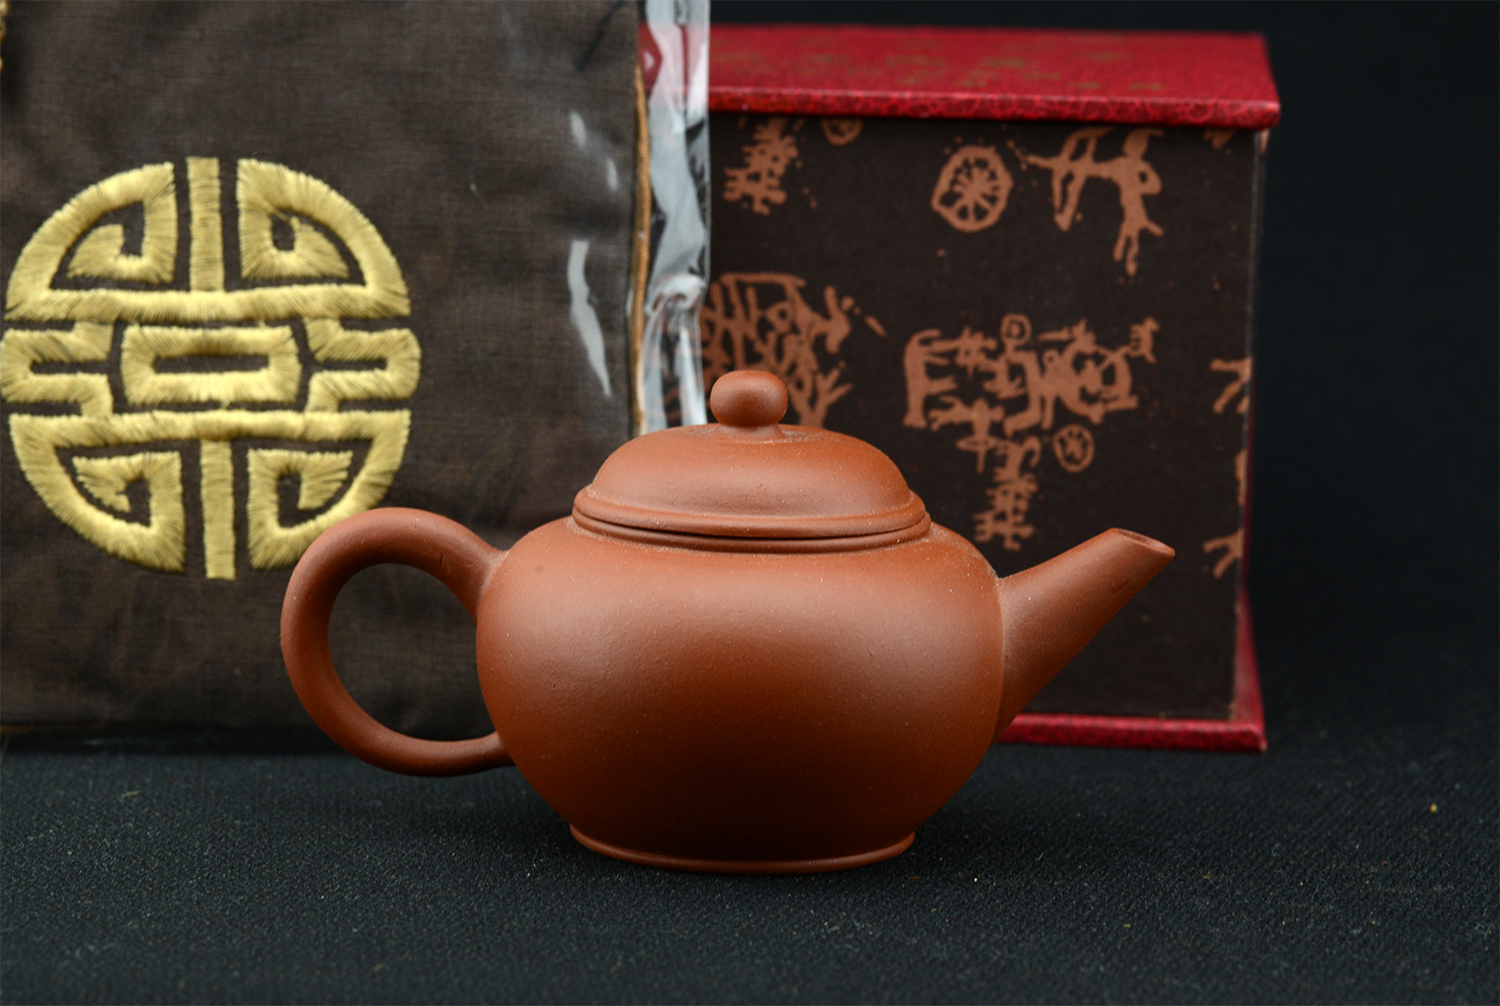 Shuii Ping yixxing teapot